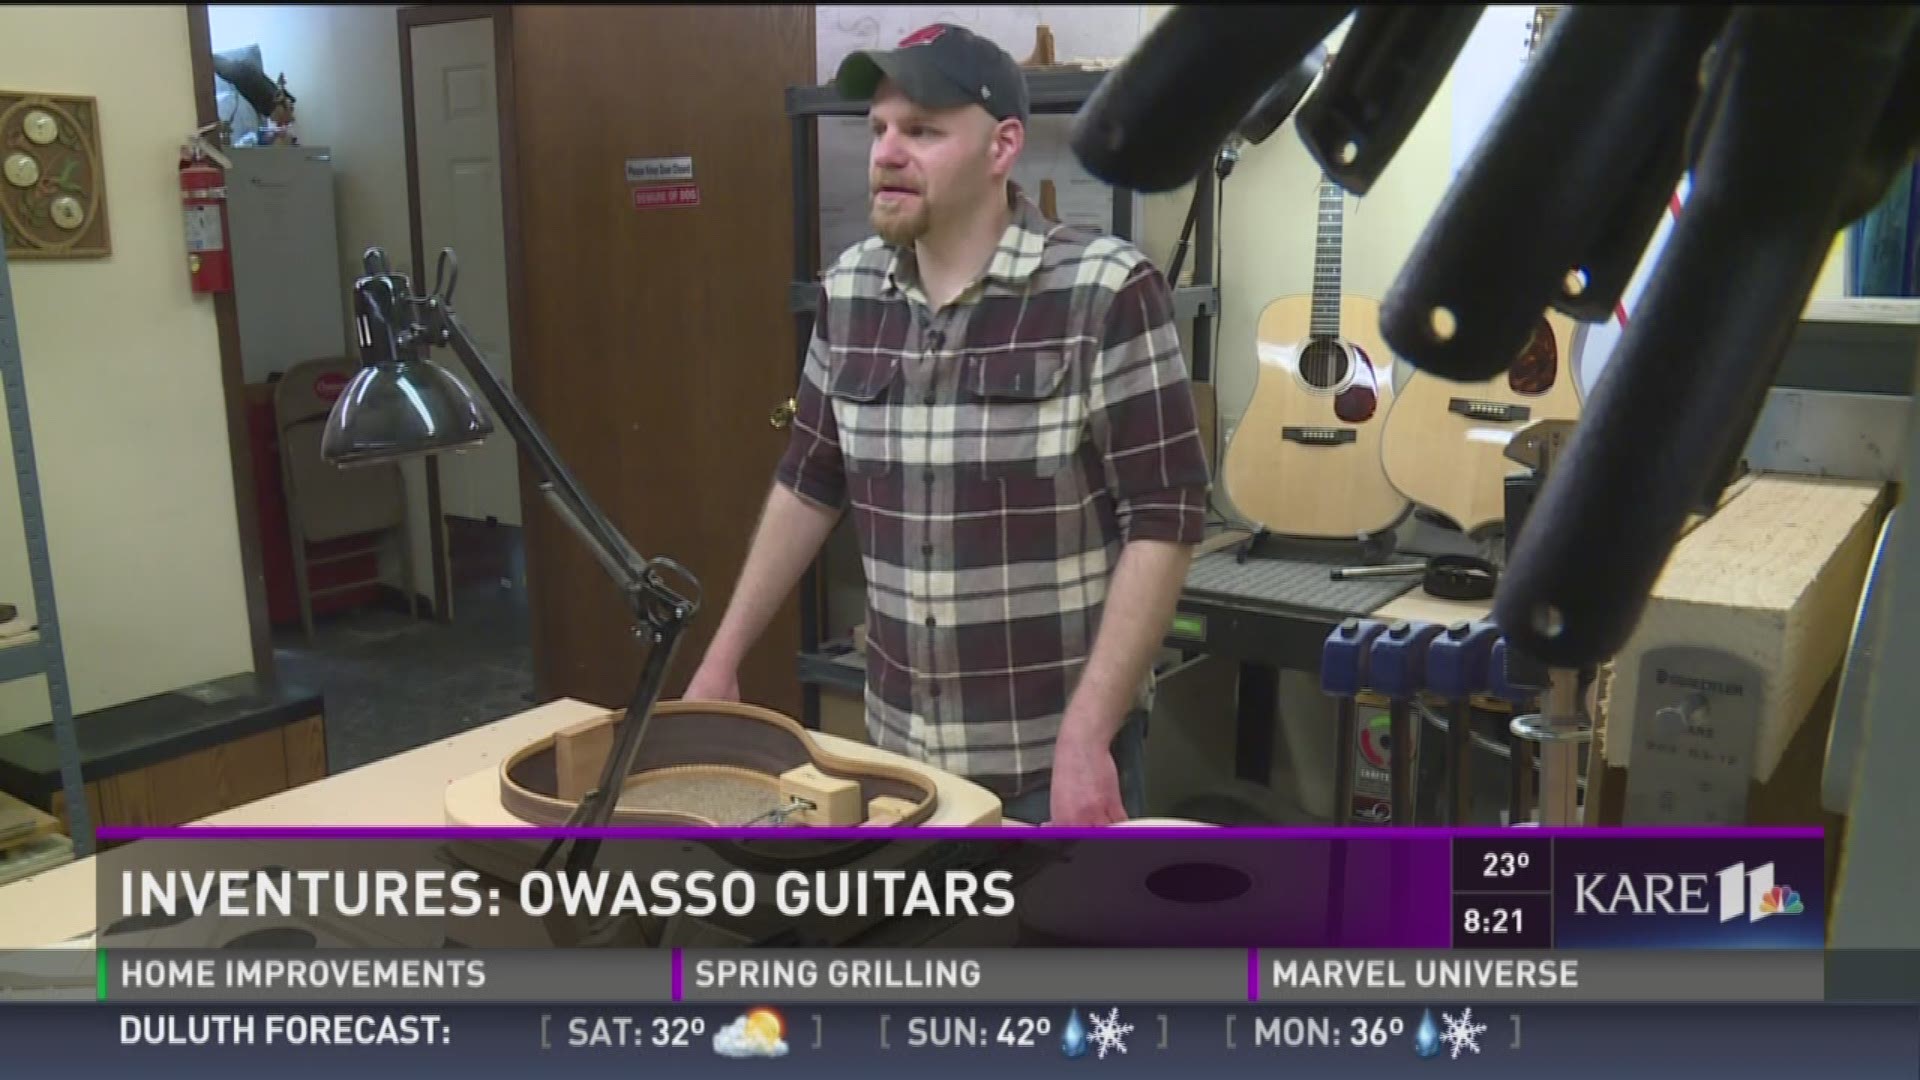 Inventures: Owasso Guitars